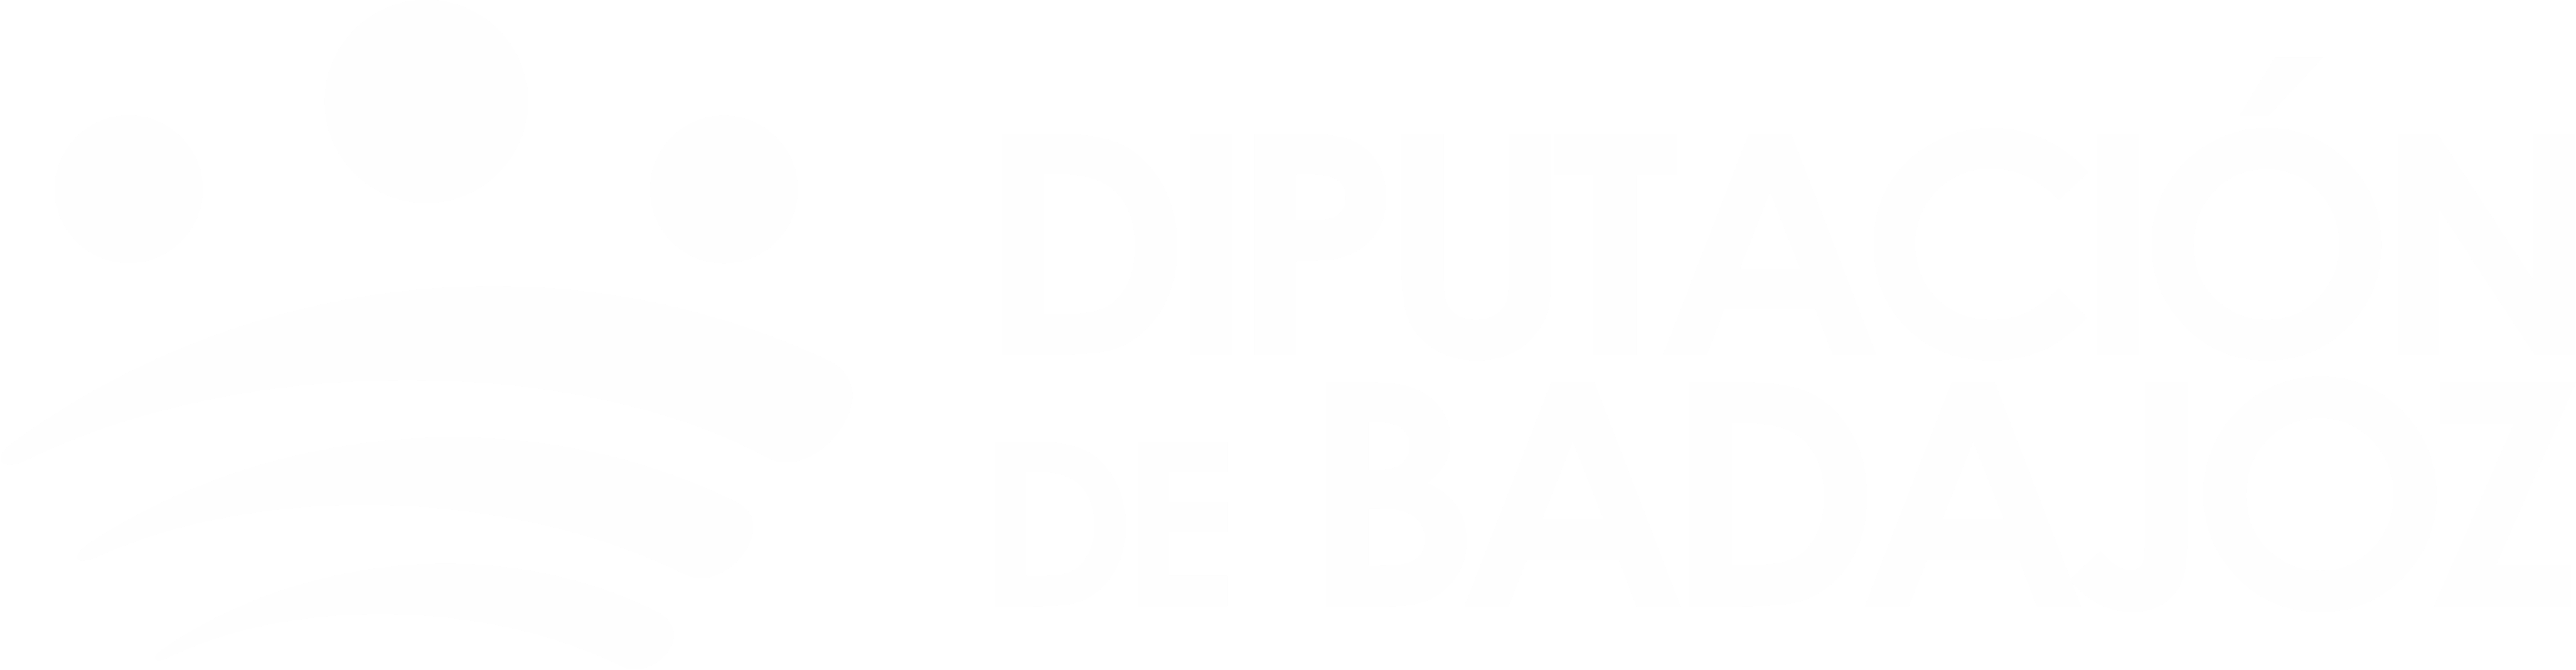 Logo Diputación